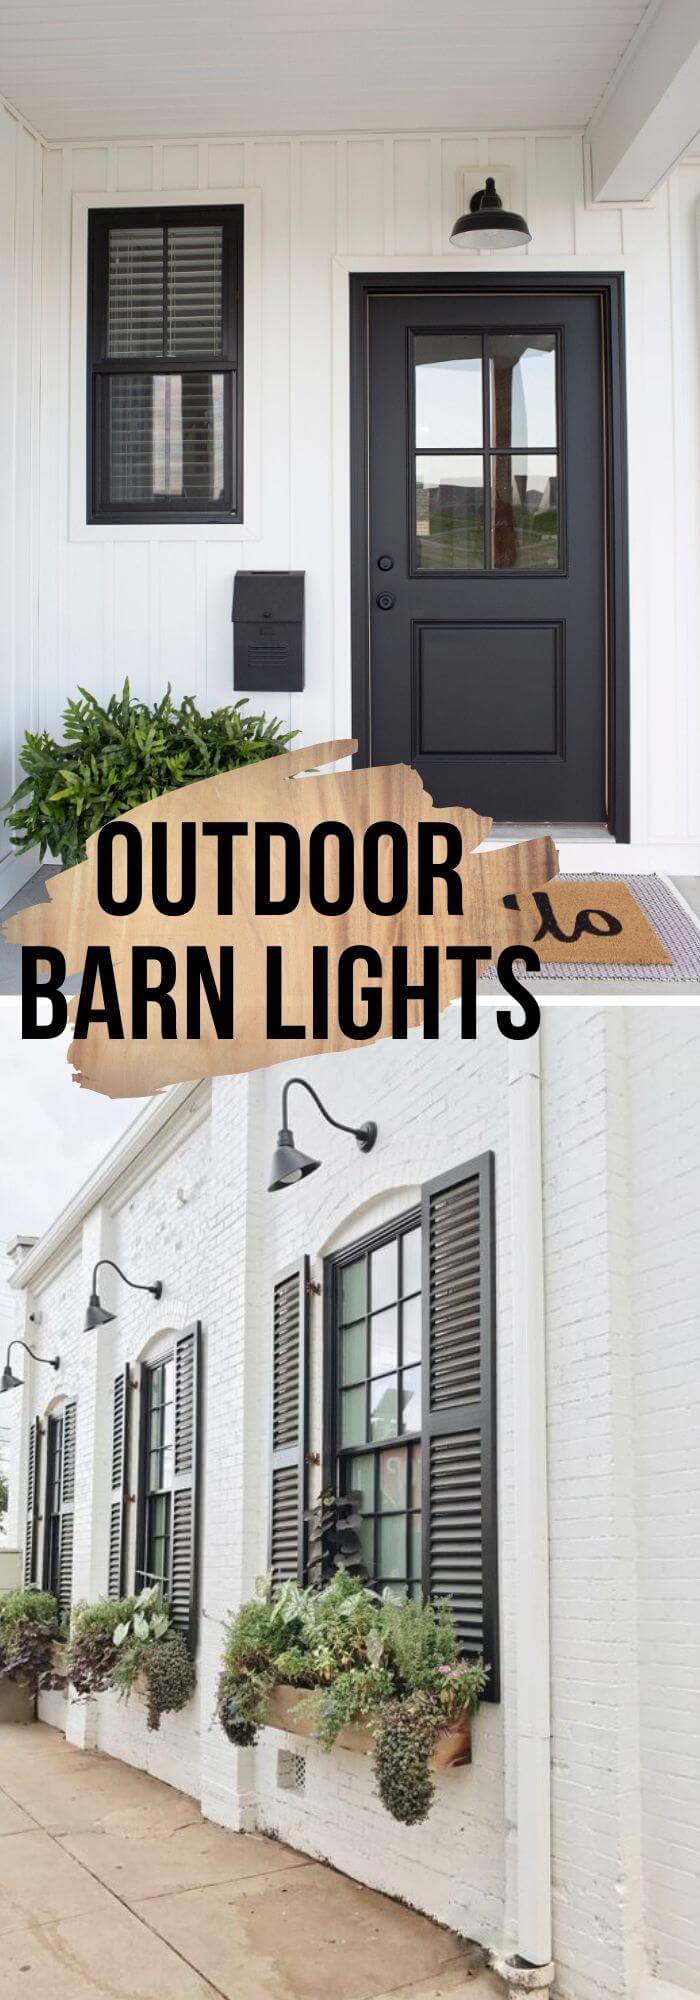 11 farmhouse outdoor decor ideas